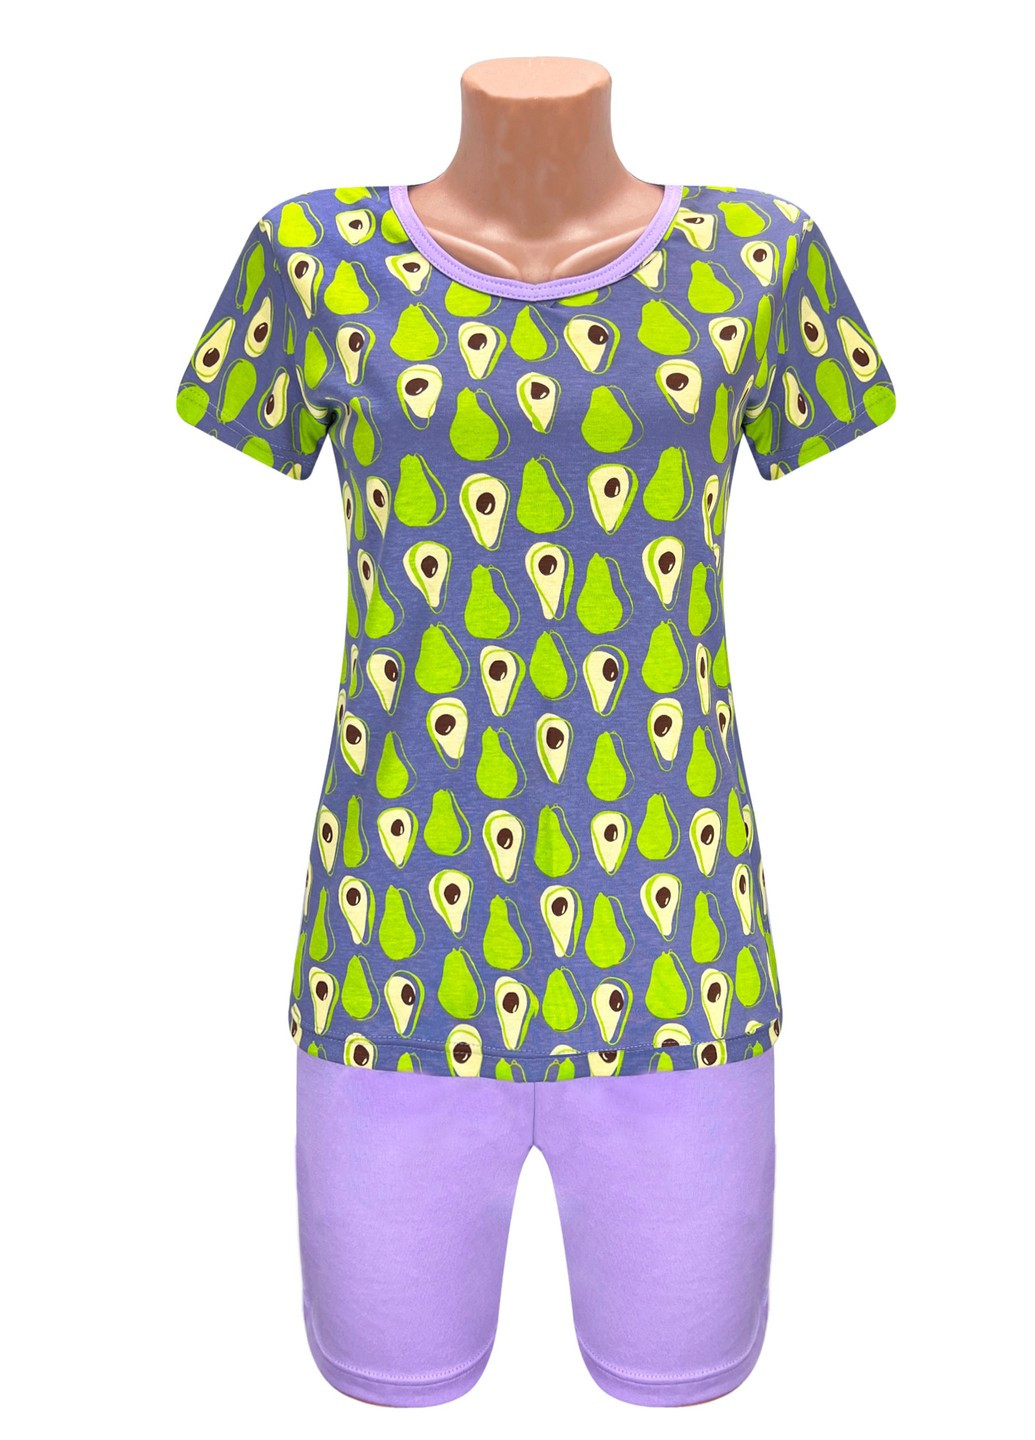 Сиреневая всесезон комплект футболка с шортами авокадо майка + шорты Жемчужина стилей 4523